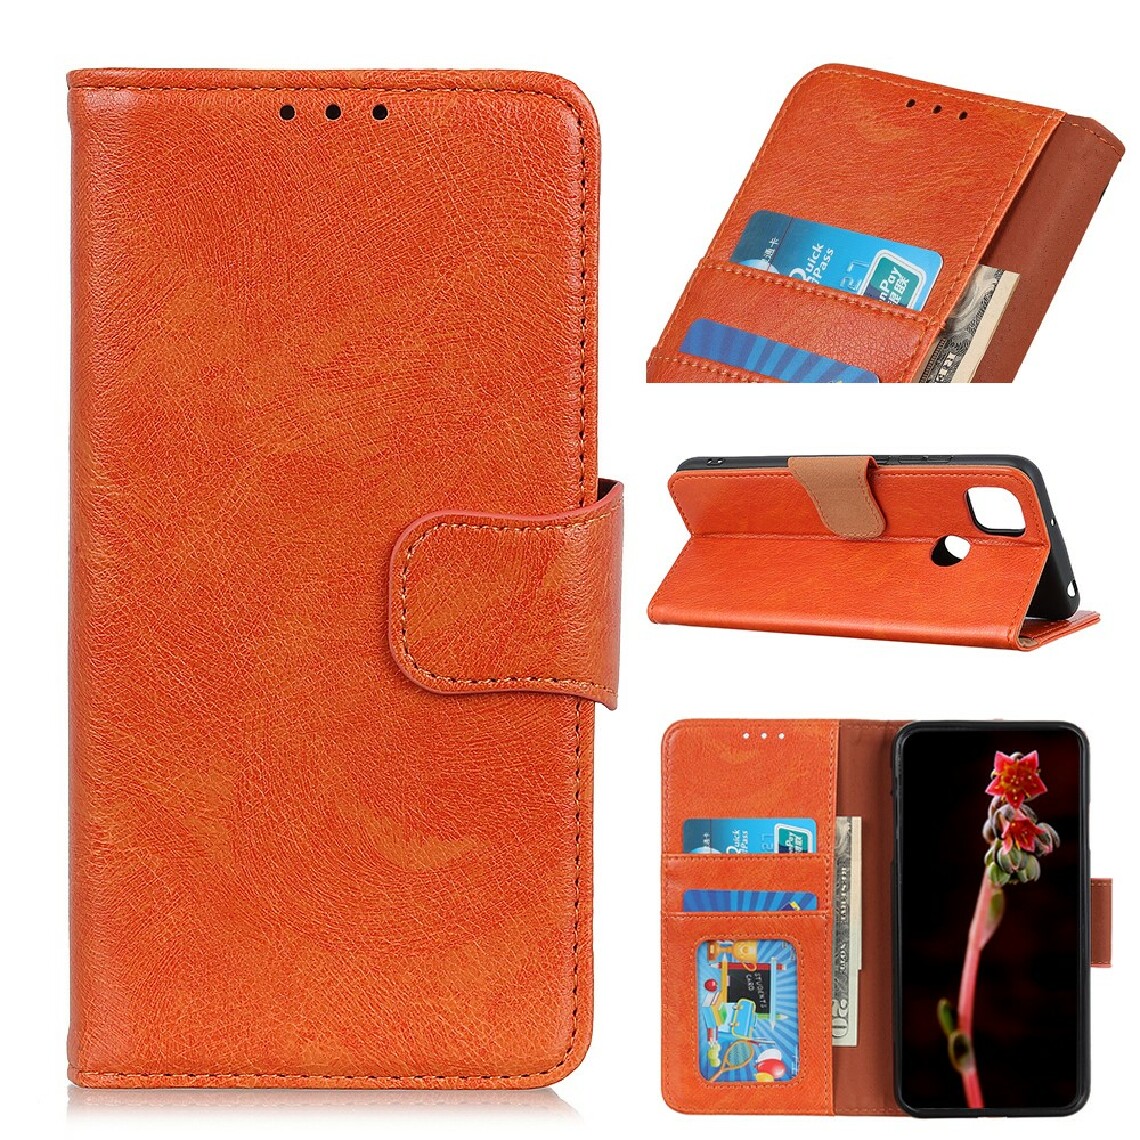 Other - Etui en PU flip de texture nappa fendue orange pour votre Motorola Moto G 5G - Coque, étui smartphone